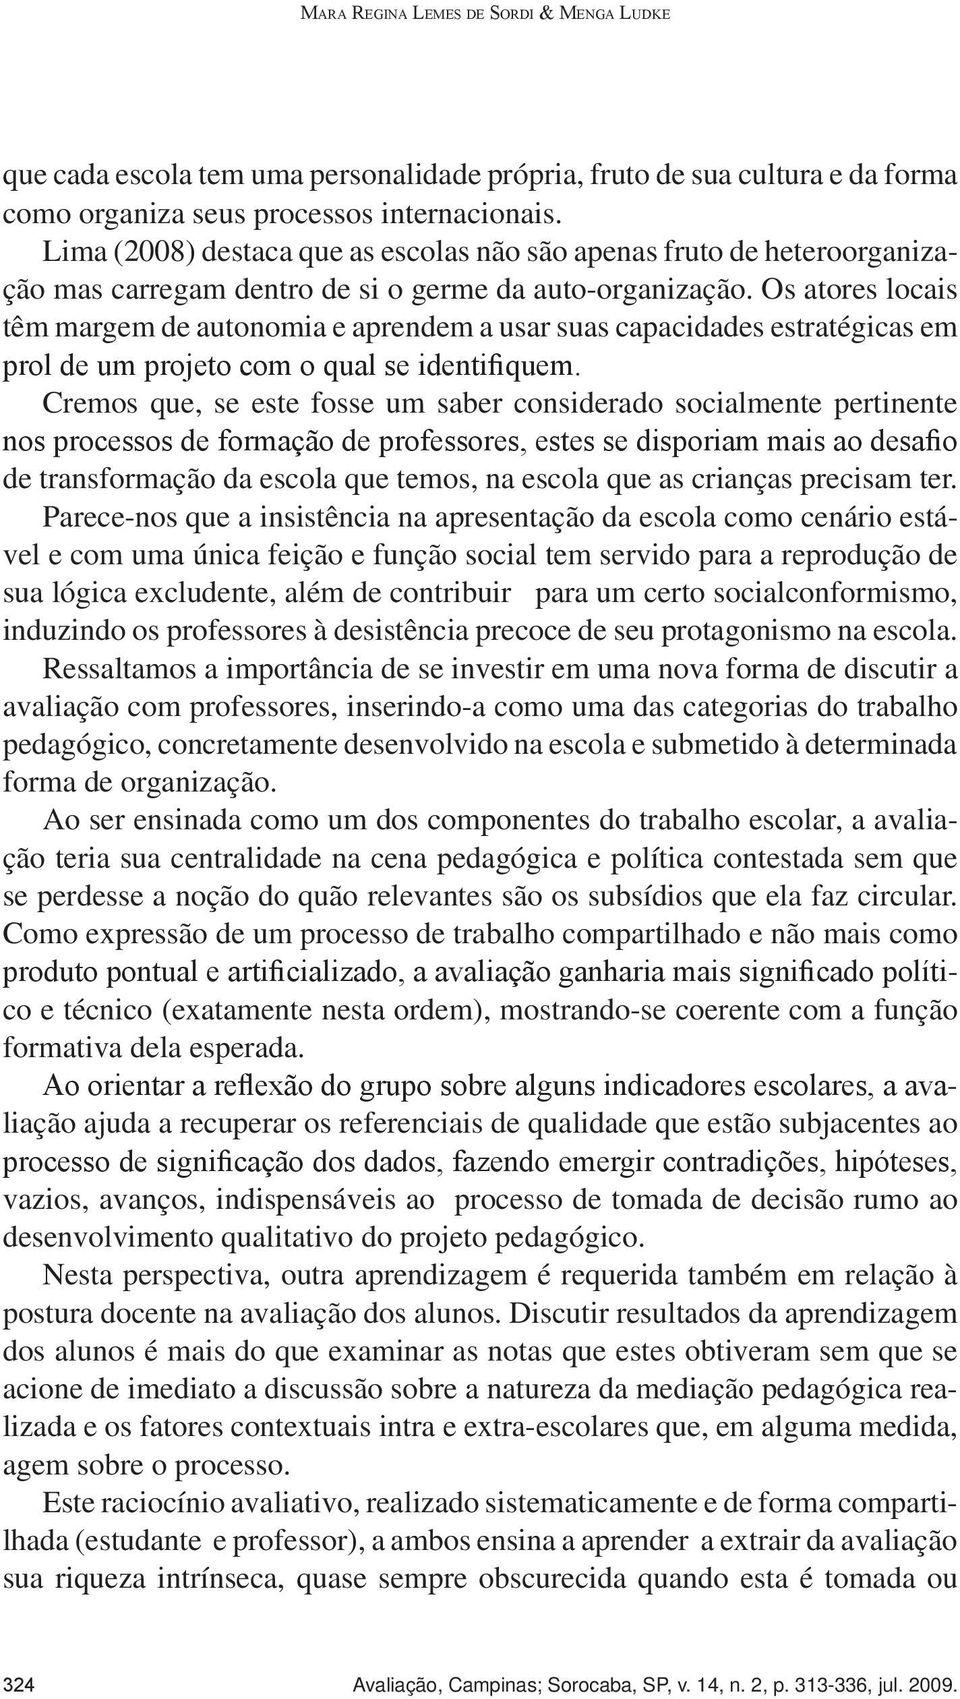 Lima (2008) destaca que as escolas não são apenas fruto de heteroorganização mas carregam dentro de si o germe da auto-organização.